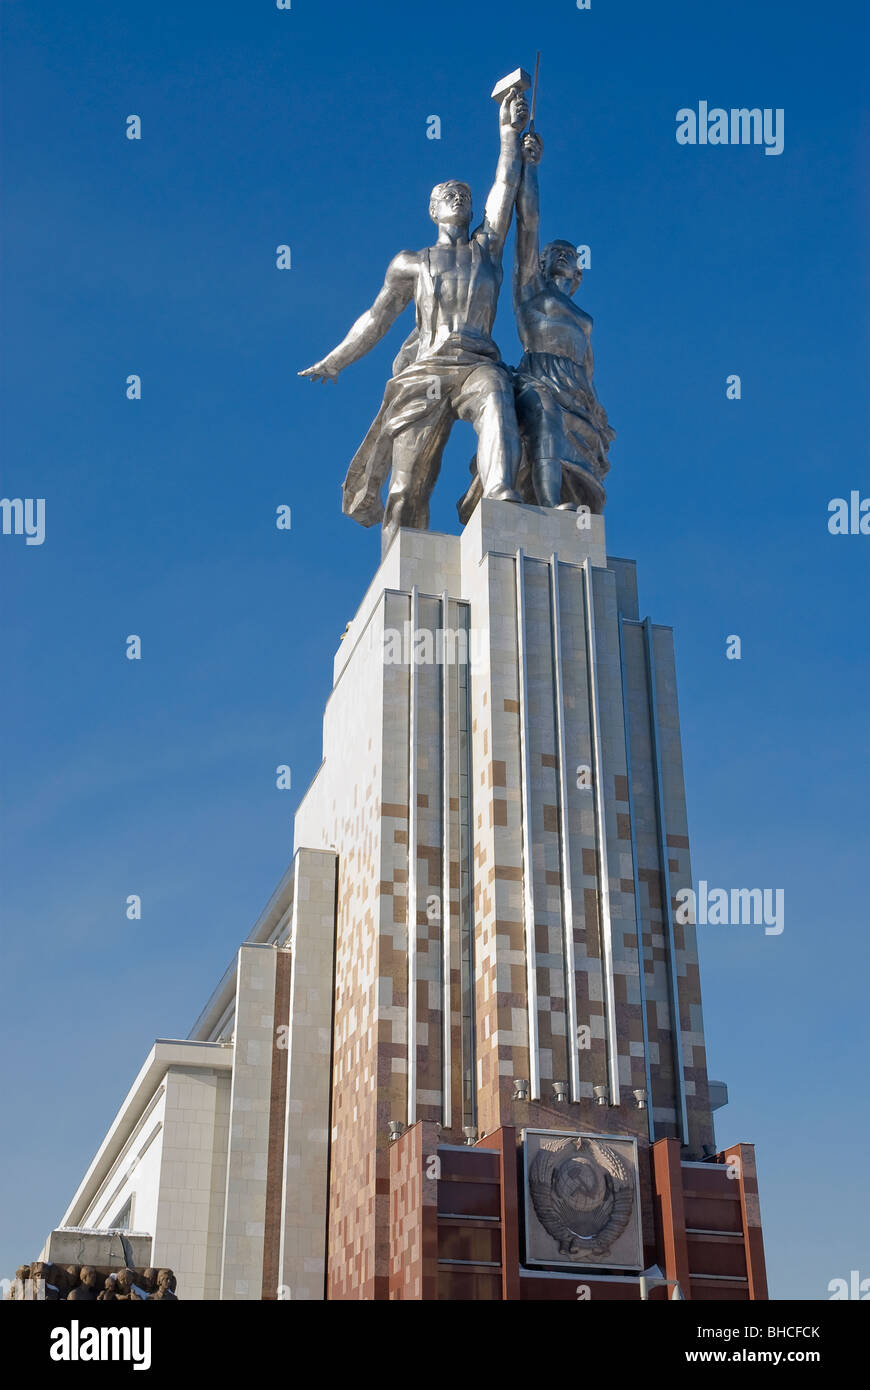 Denkmal für Arbeiter und Bäuerin des sowjetischen Bildhauers Vera Muhina. Gegründet 1937 und im Jahr 2009 restauriert. Moskau, Russland Stockfoto